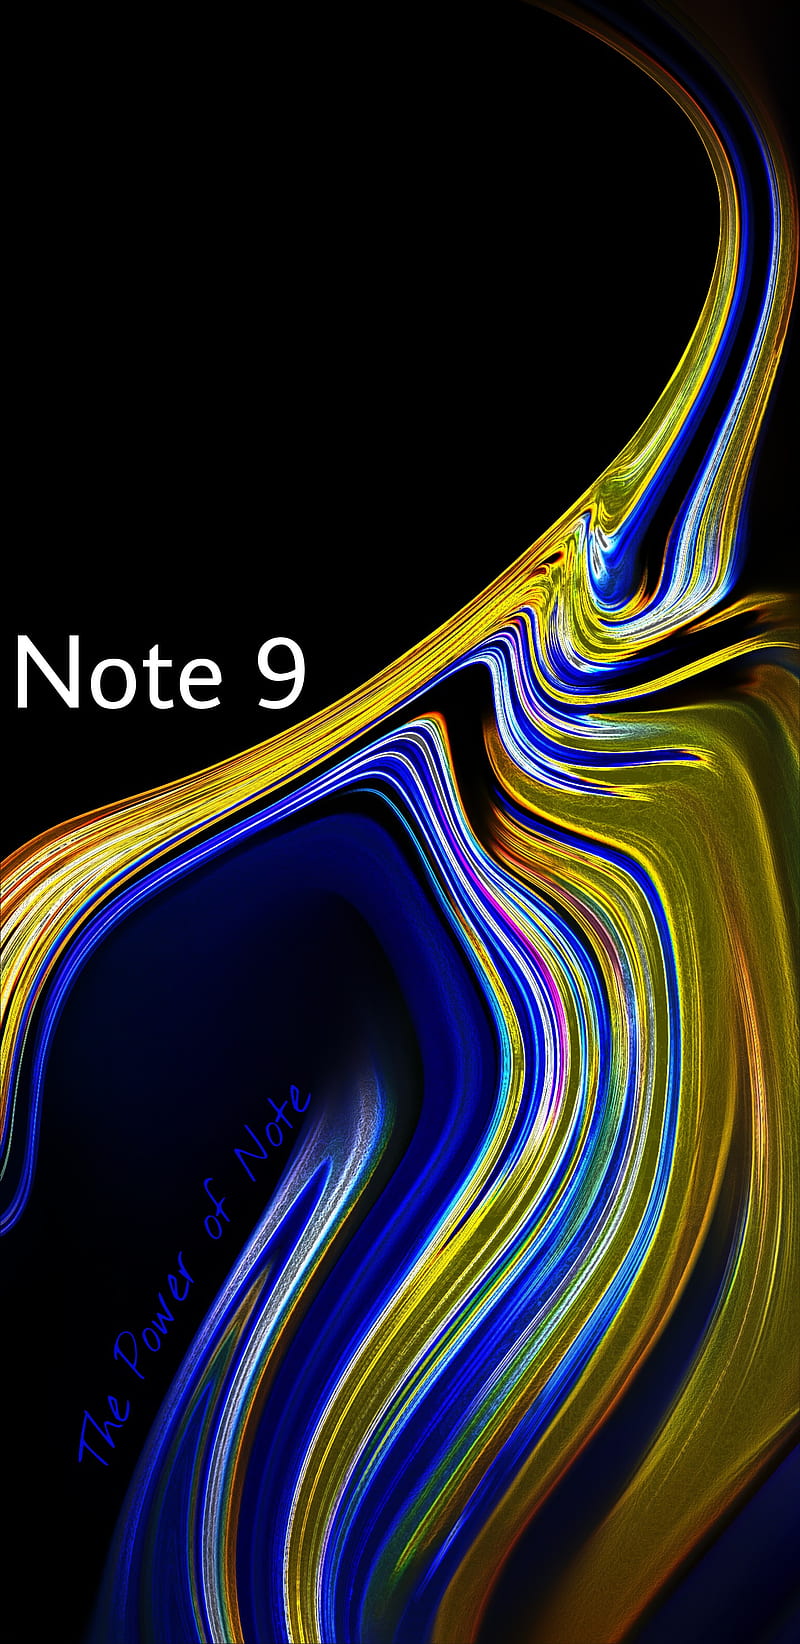 Những hình nền điện thoại Note 9 với cạnh viền tuyệt đẹp giúp cho thiết bị của bạn thêm phần sang trọng và thời thượng. Cùng thưởng thức những thiết kế độc đáo, khiến chiếc điện thoại của bạn trở nên đẹp hơn bao giờ hết!